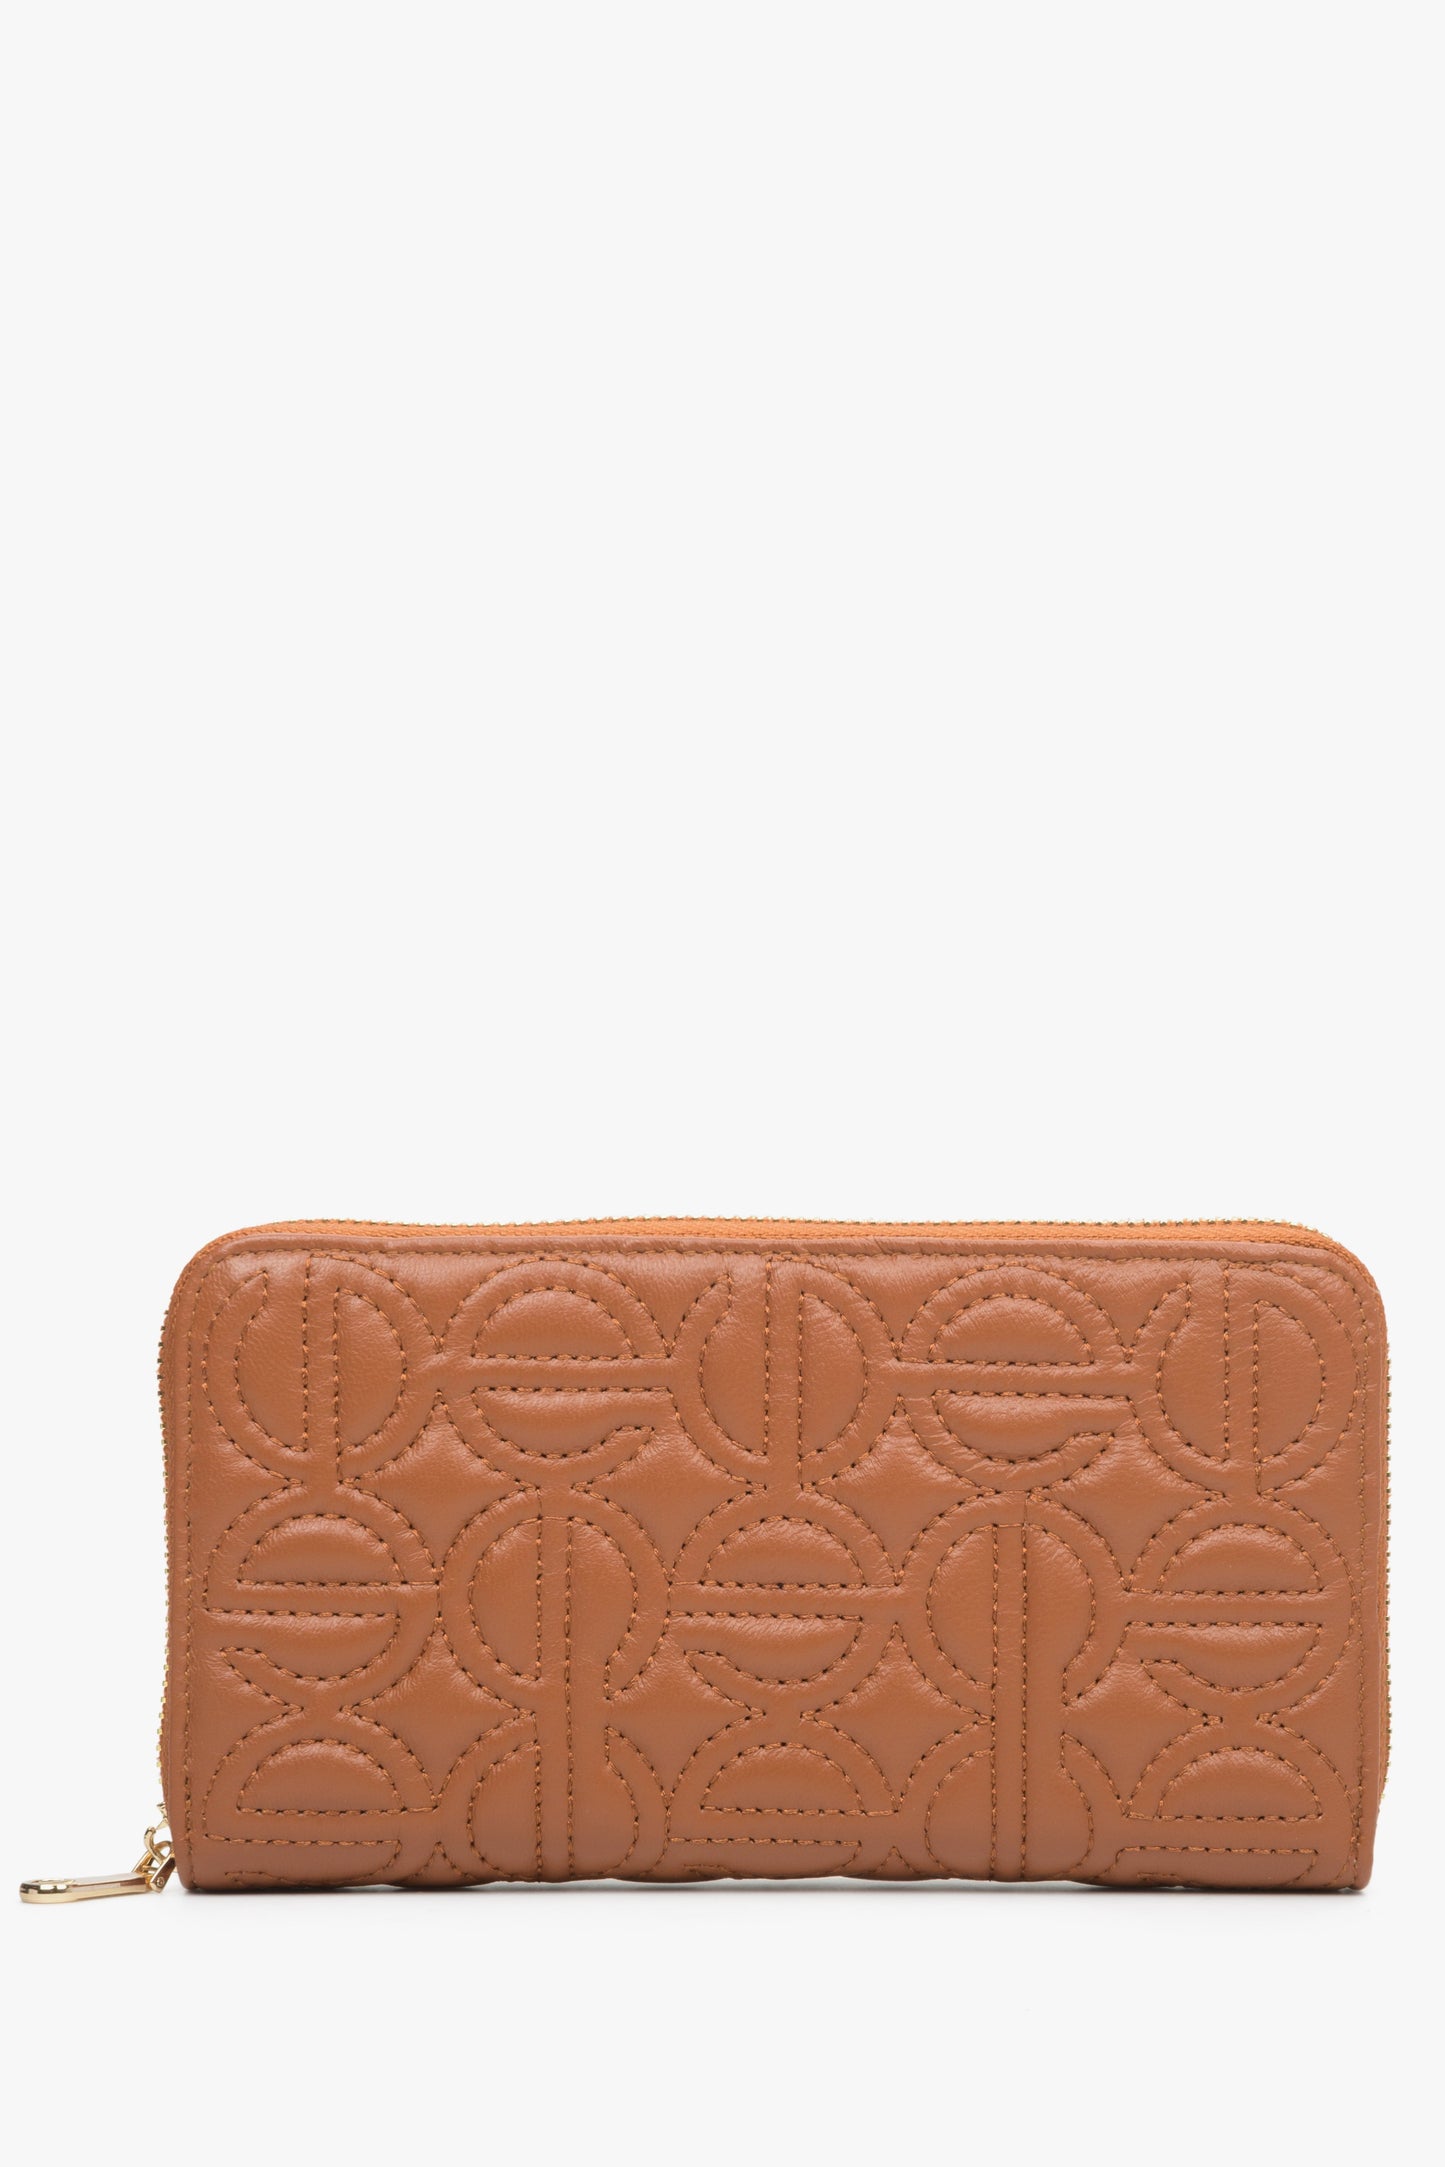 Duży, brązowy portfel damski z suwakiem marki Estro.